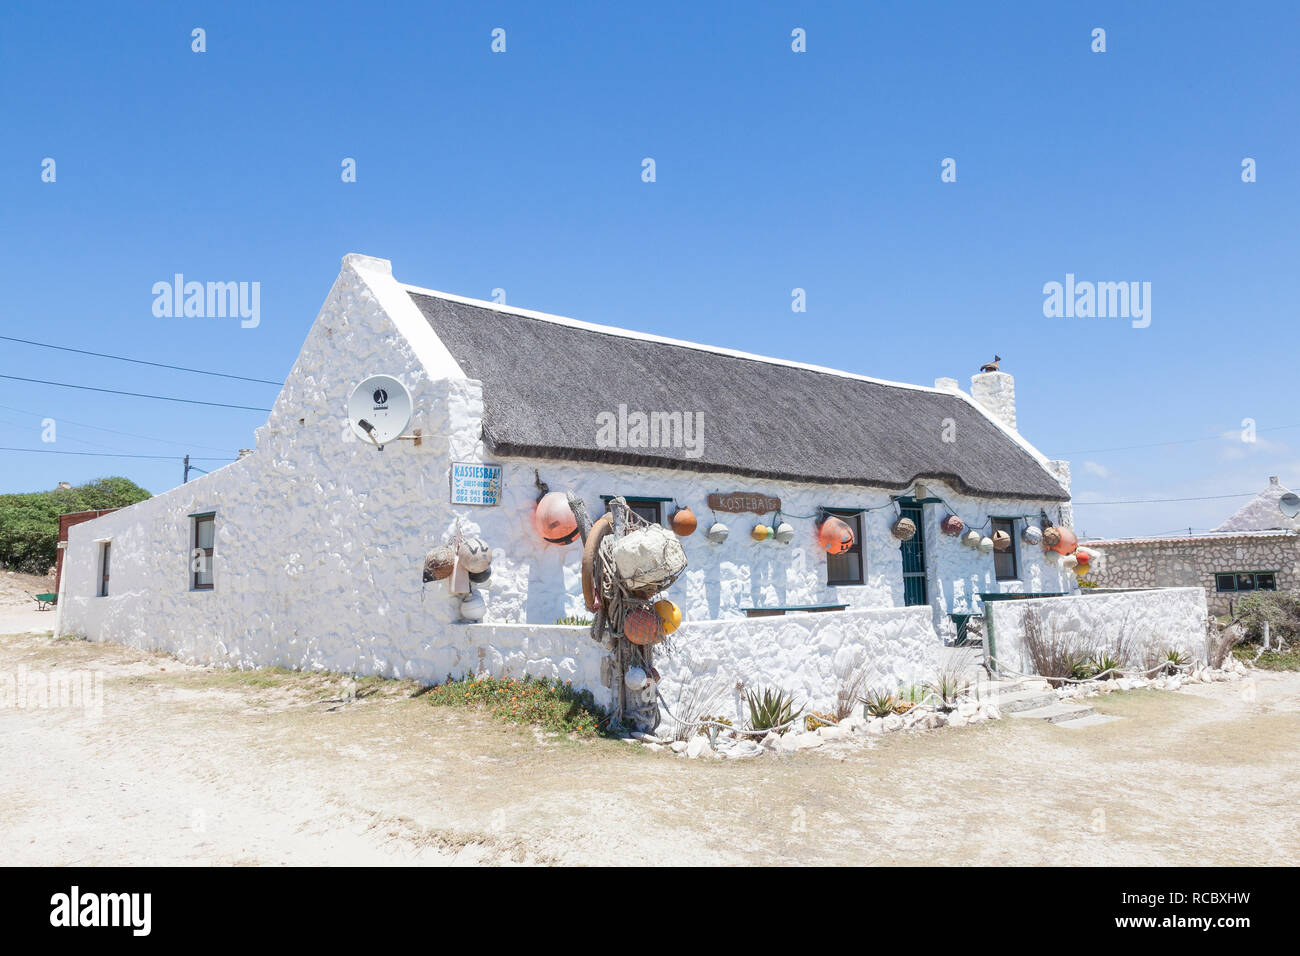 Un pêcheur converti;s cottage (Kostebaie - coût beaucoup) offrant un hébergement touristique dans le village de Arniston, Agulhas, Western Cape, South Afri Banque D'Images